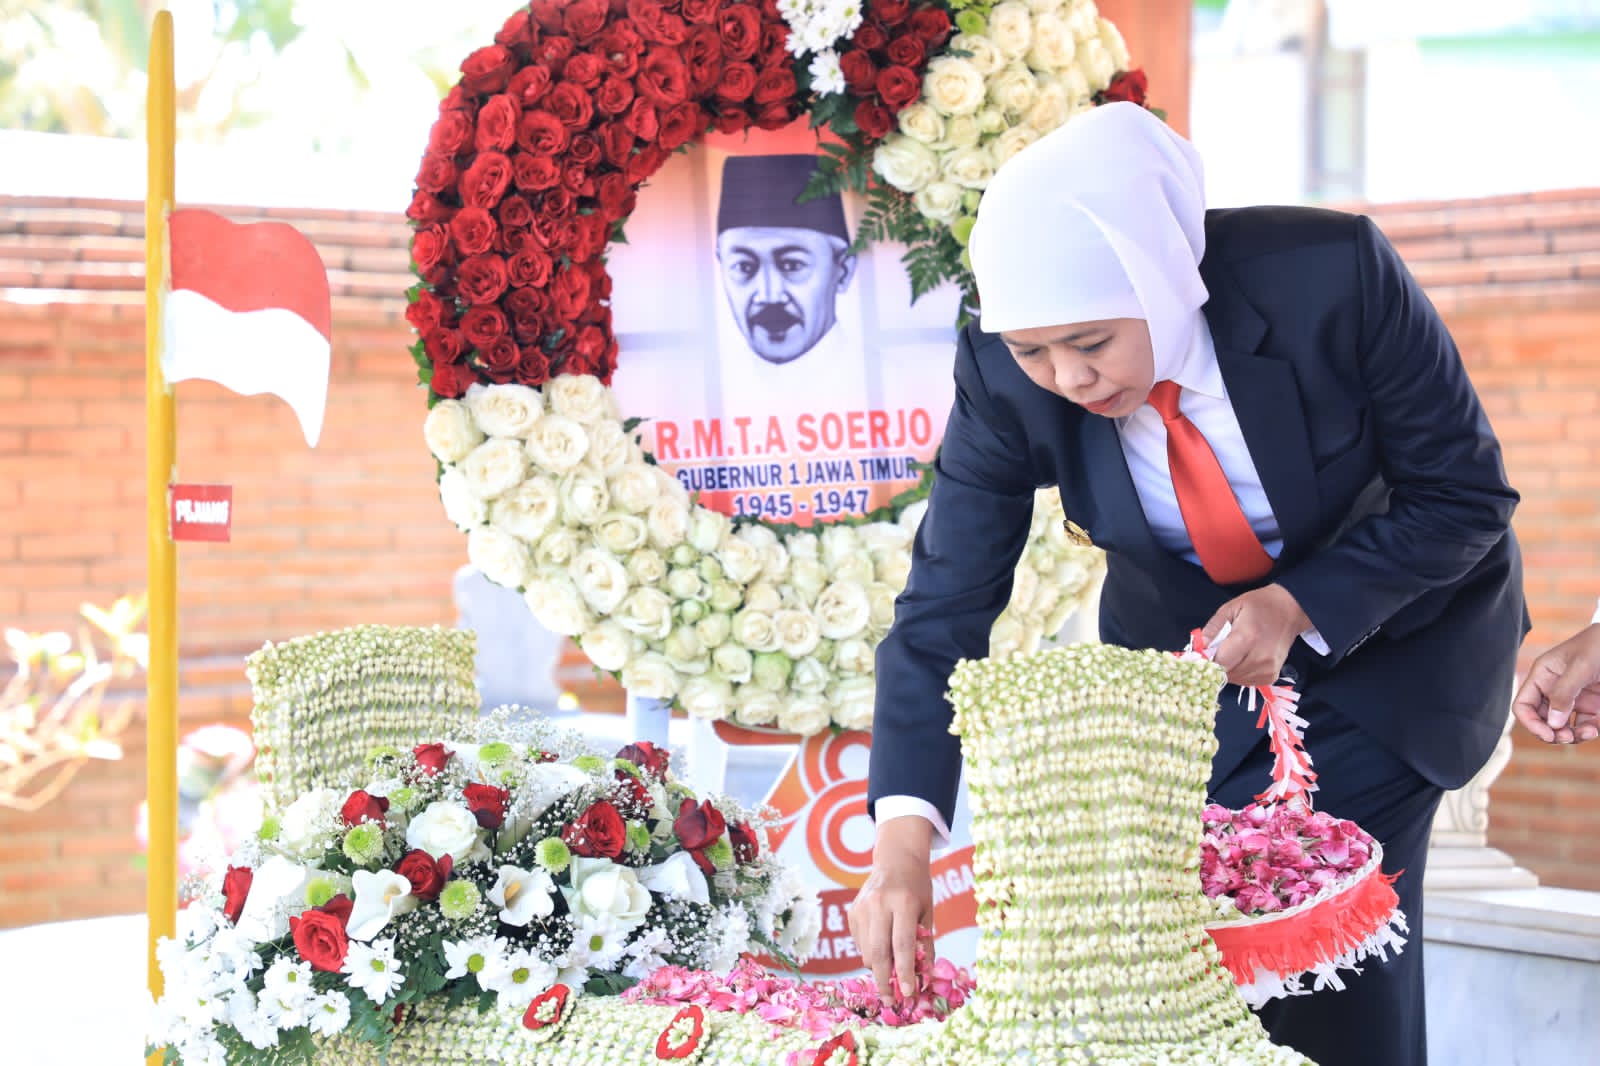 Sambut Hari Jadi Ke-78 Jatim, Khofifah Ziarah ke Makam Gubernur Pertama Jatim dan Beri Santunan 250 Keluarga Kurang Mampu